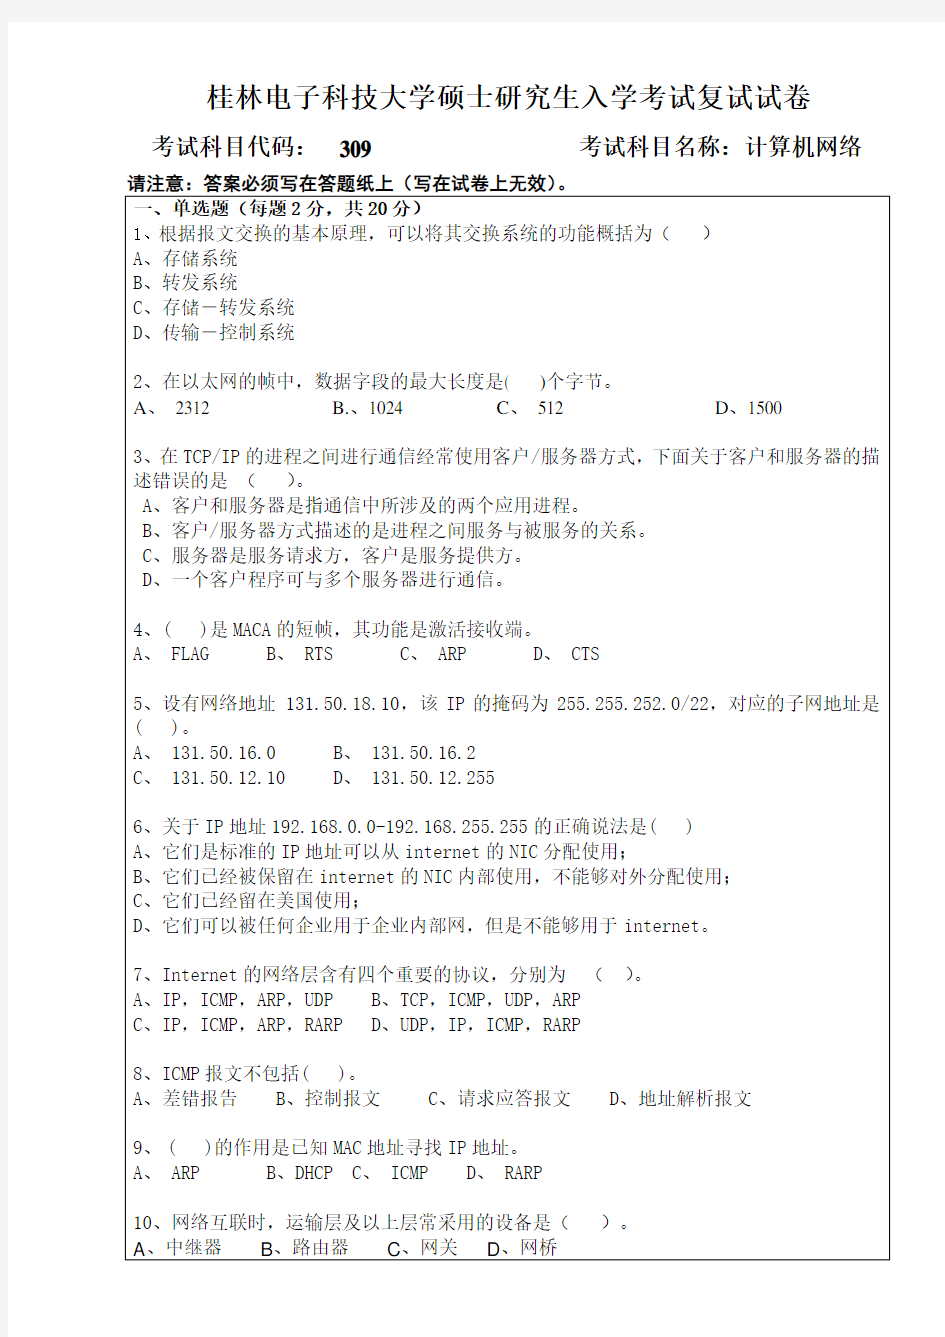 2017年桂林电子科技大学考博真题309计算机网络博士研究生考试试题